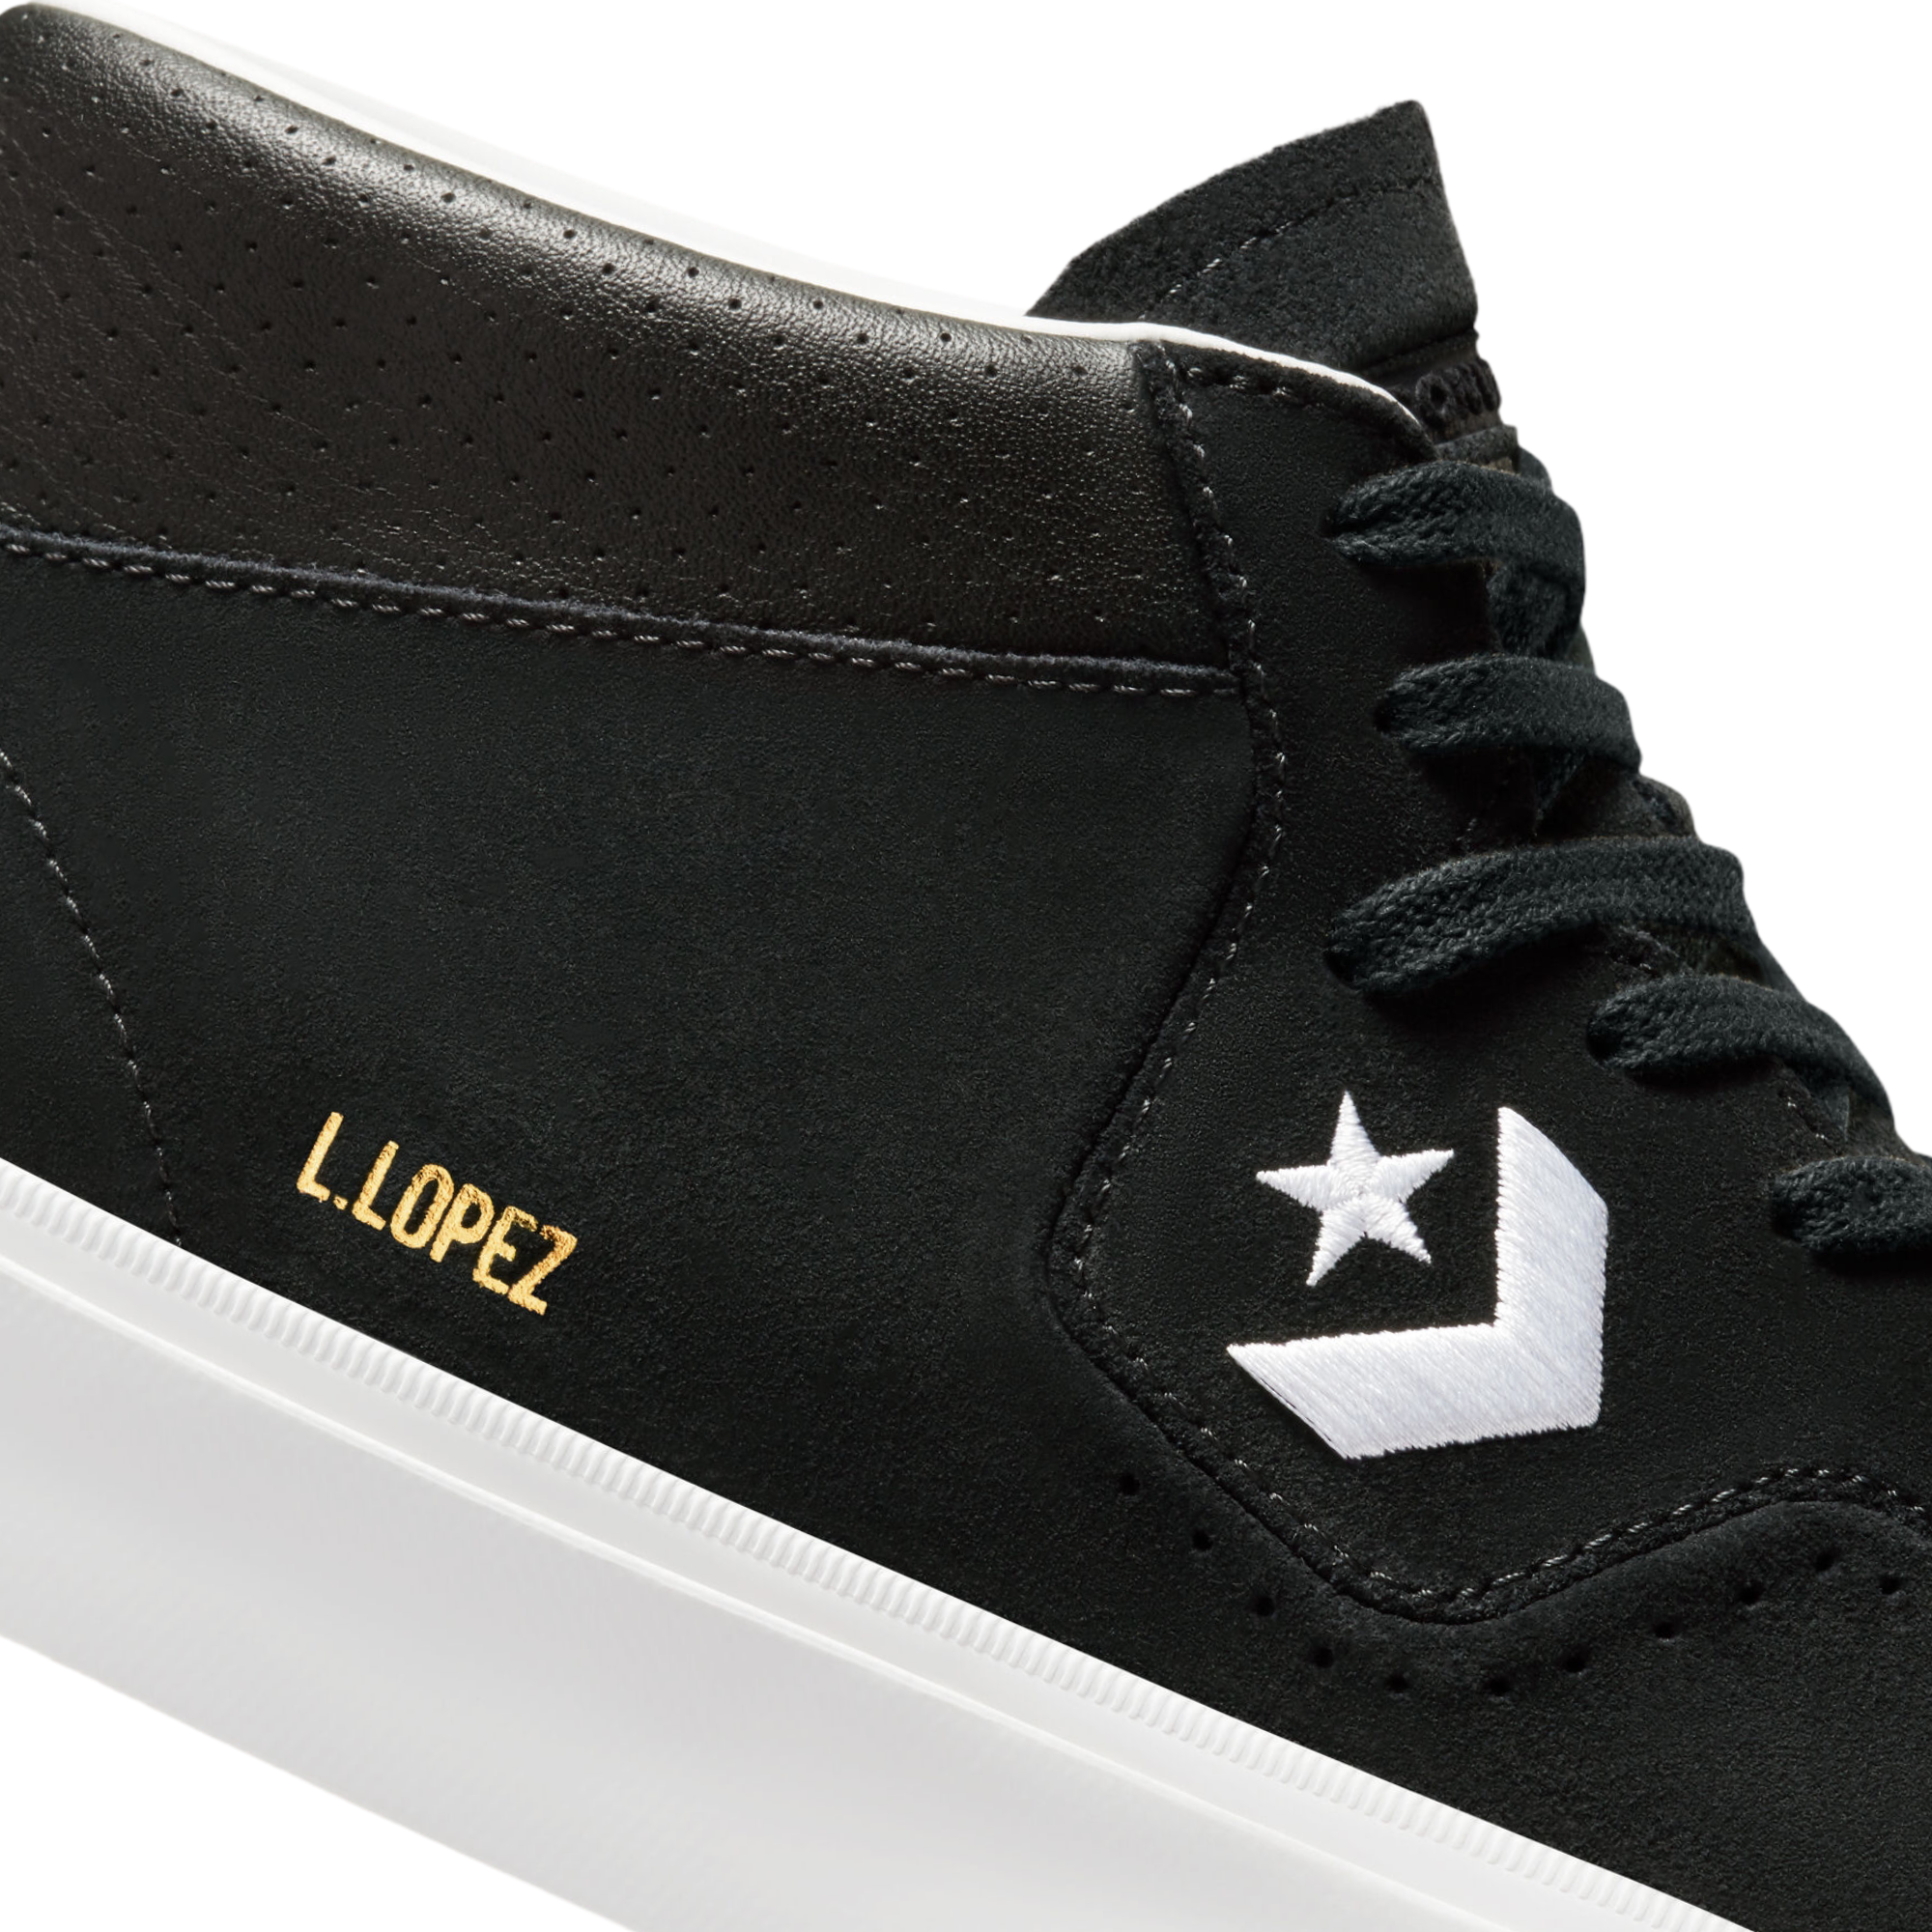 Converse Louie Lopez Pro Mid Shoes - White/Black/White - 6.5